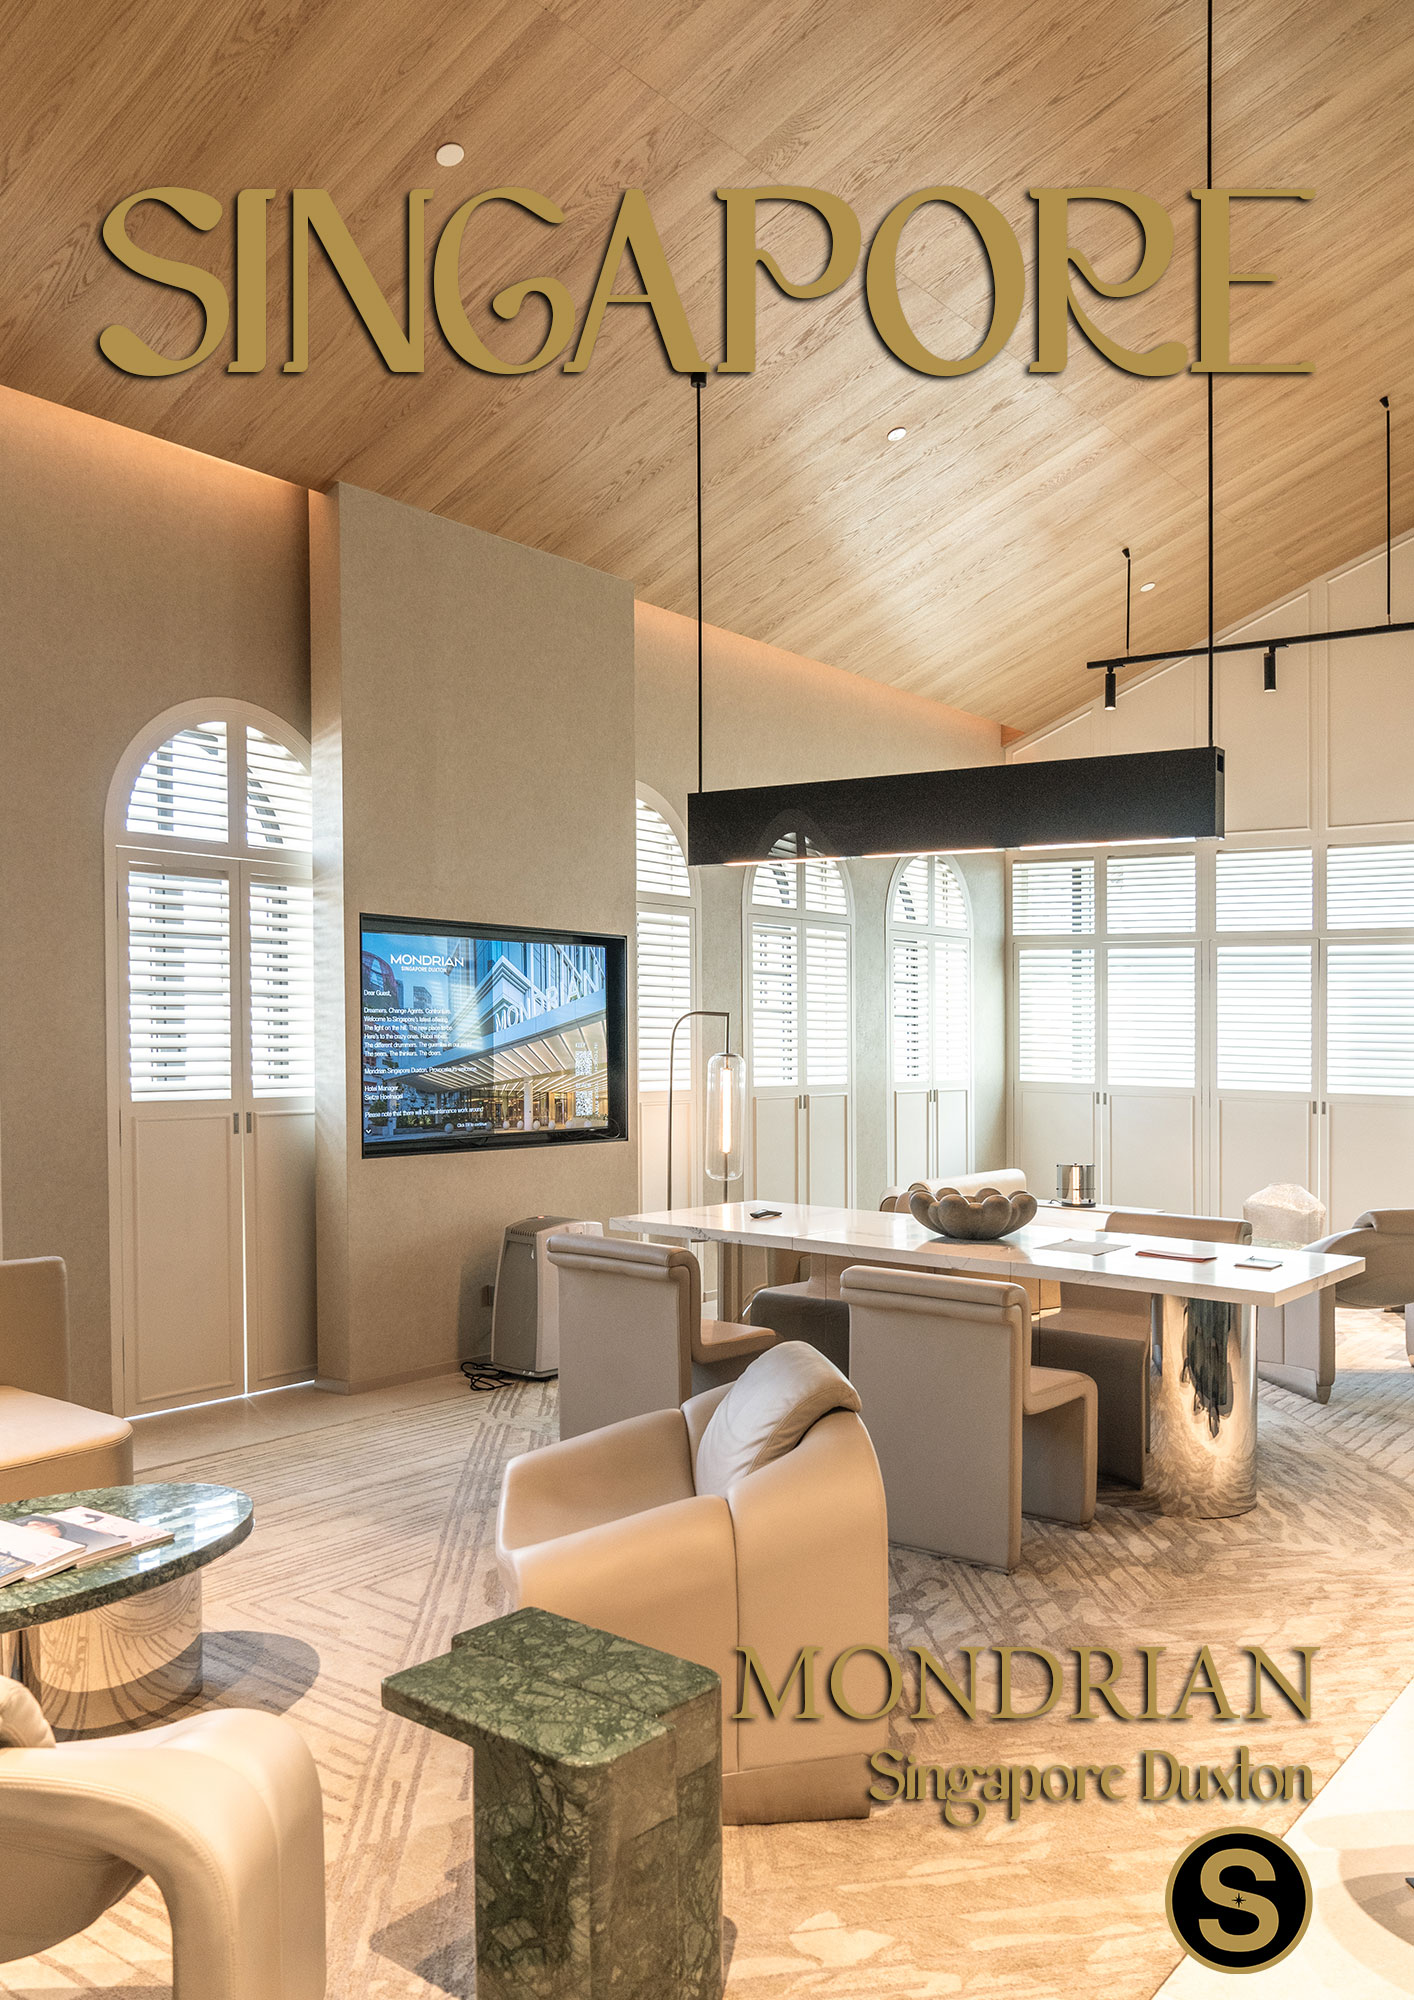 Mondrian Singapore Duxton Hotel Review